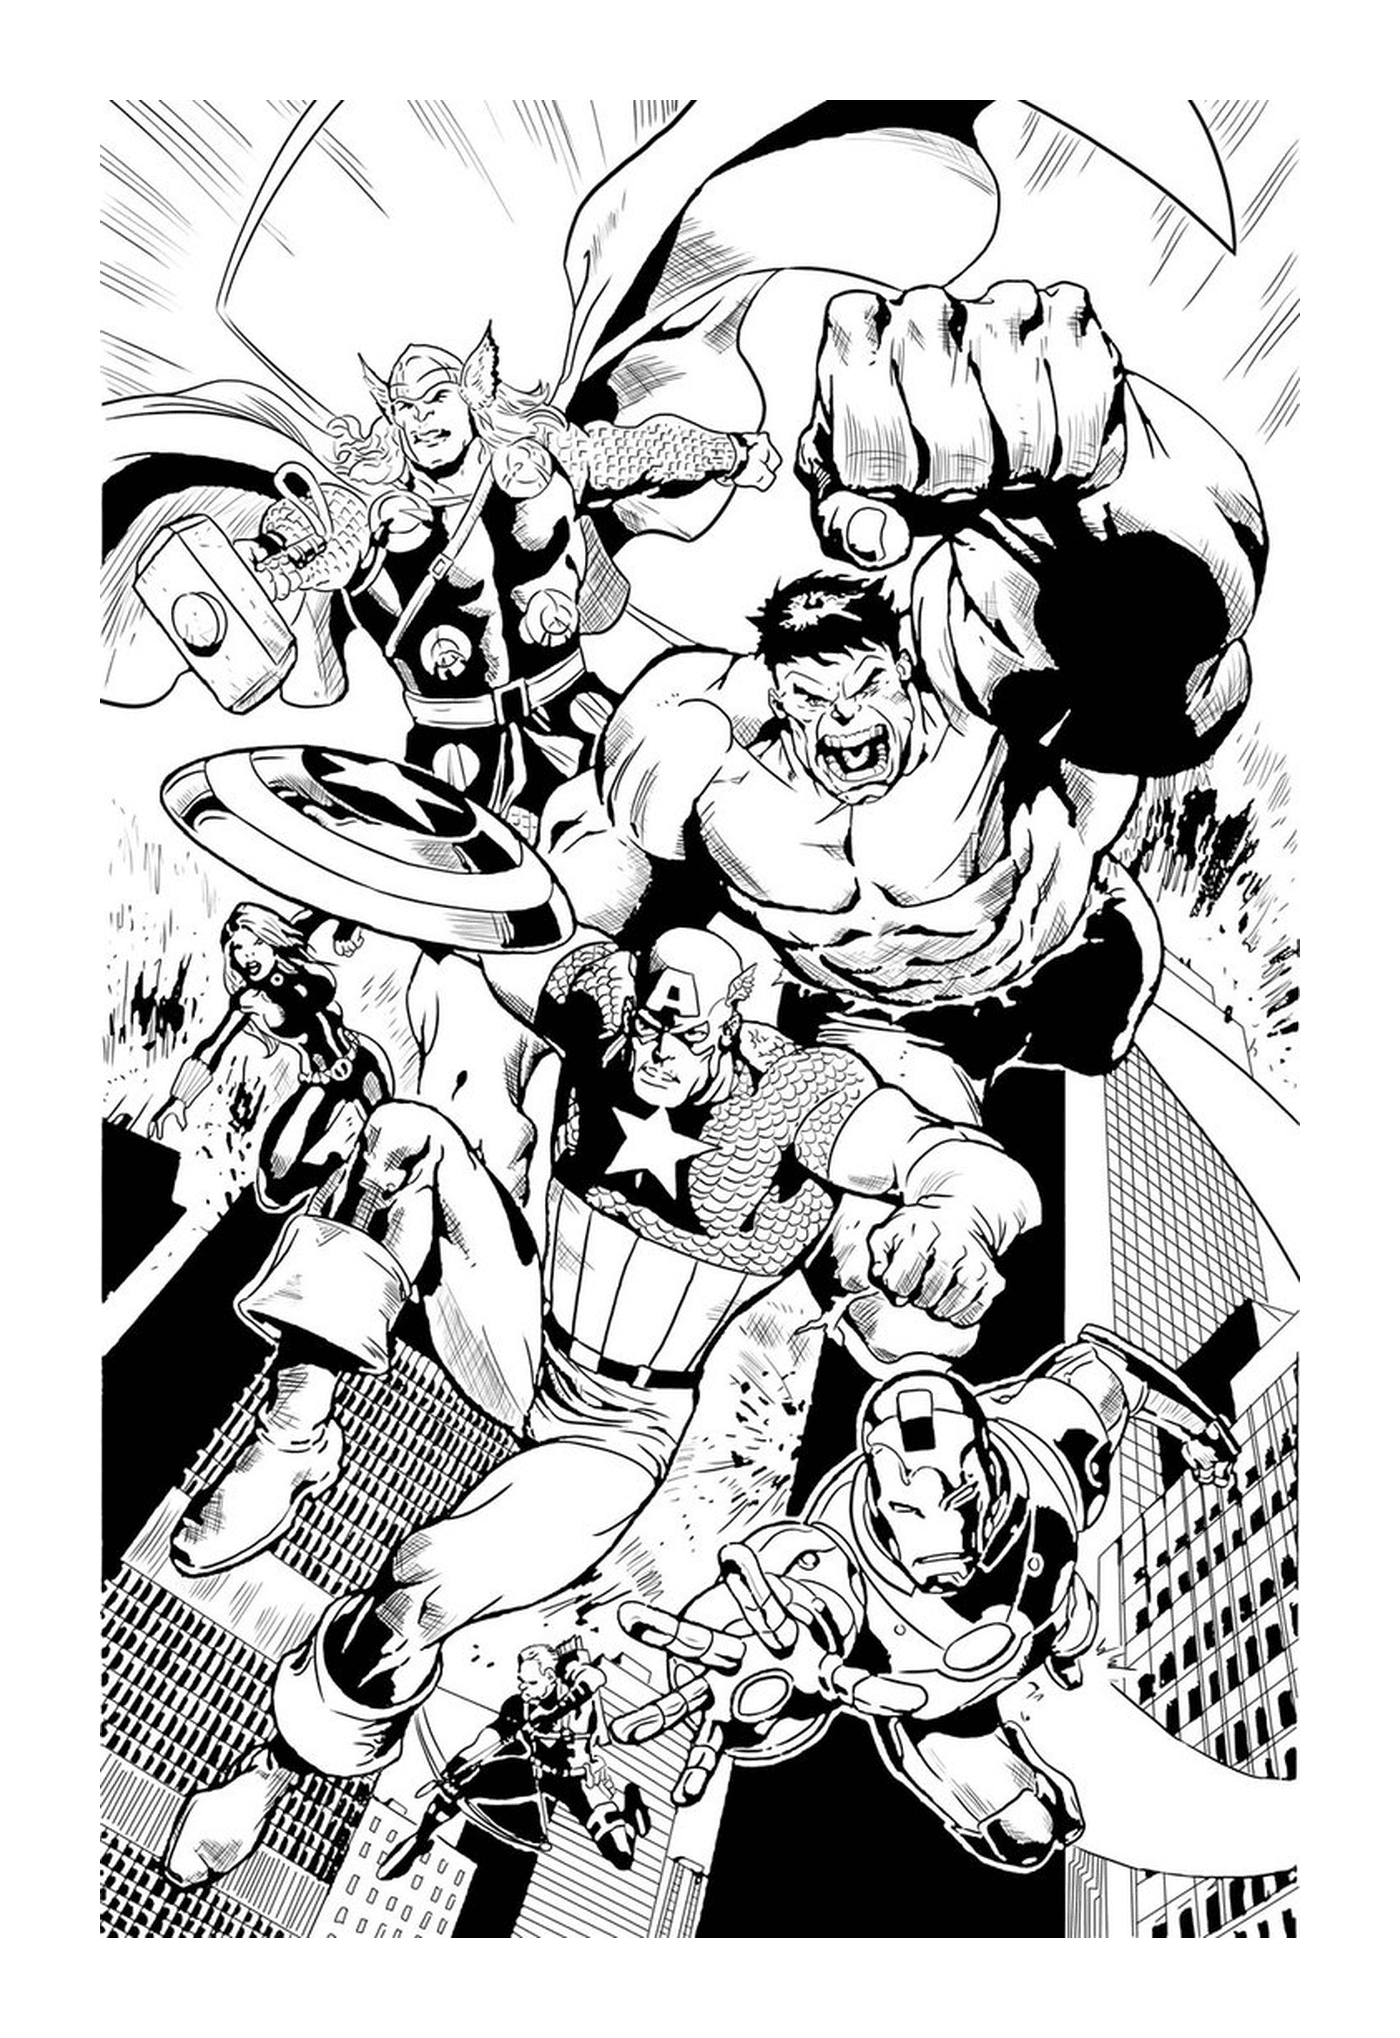   Noir et blanc, un groupe de super-héros 